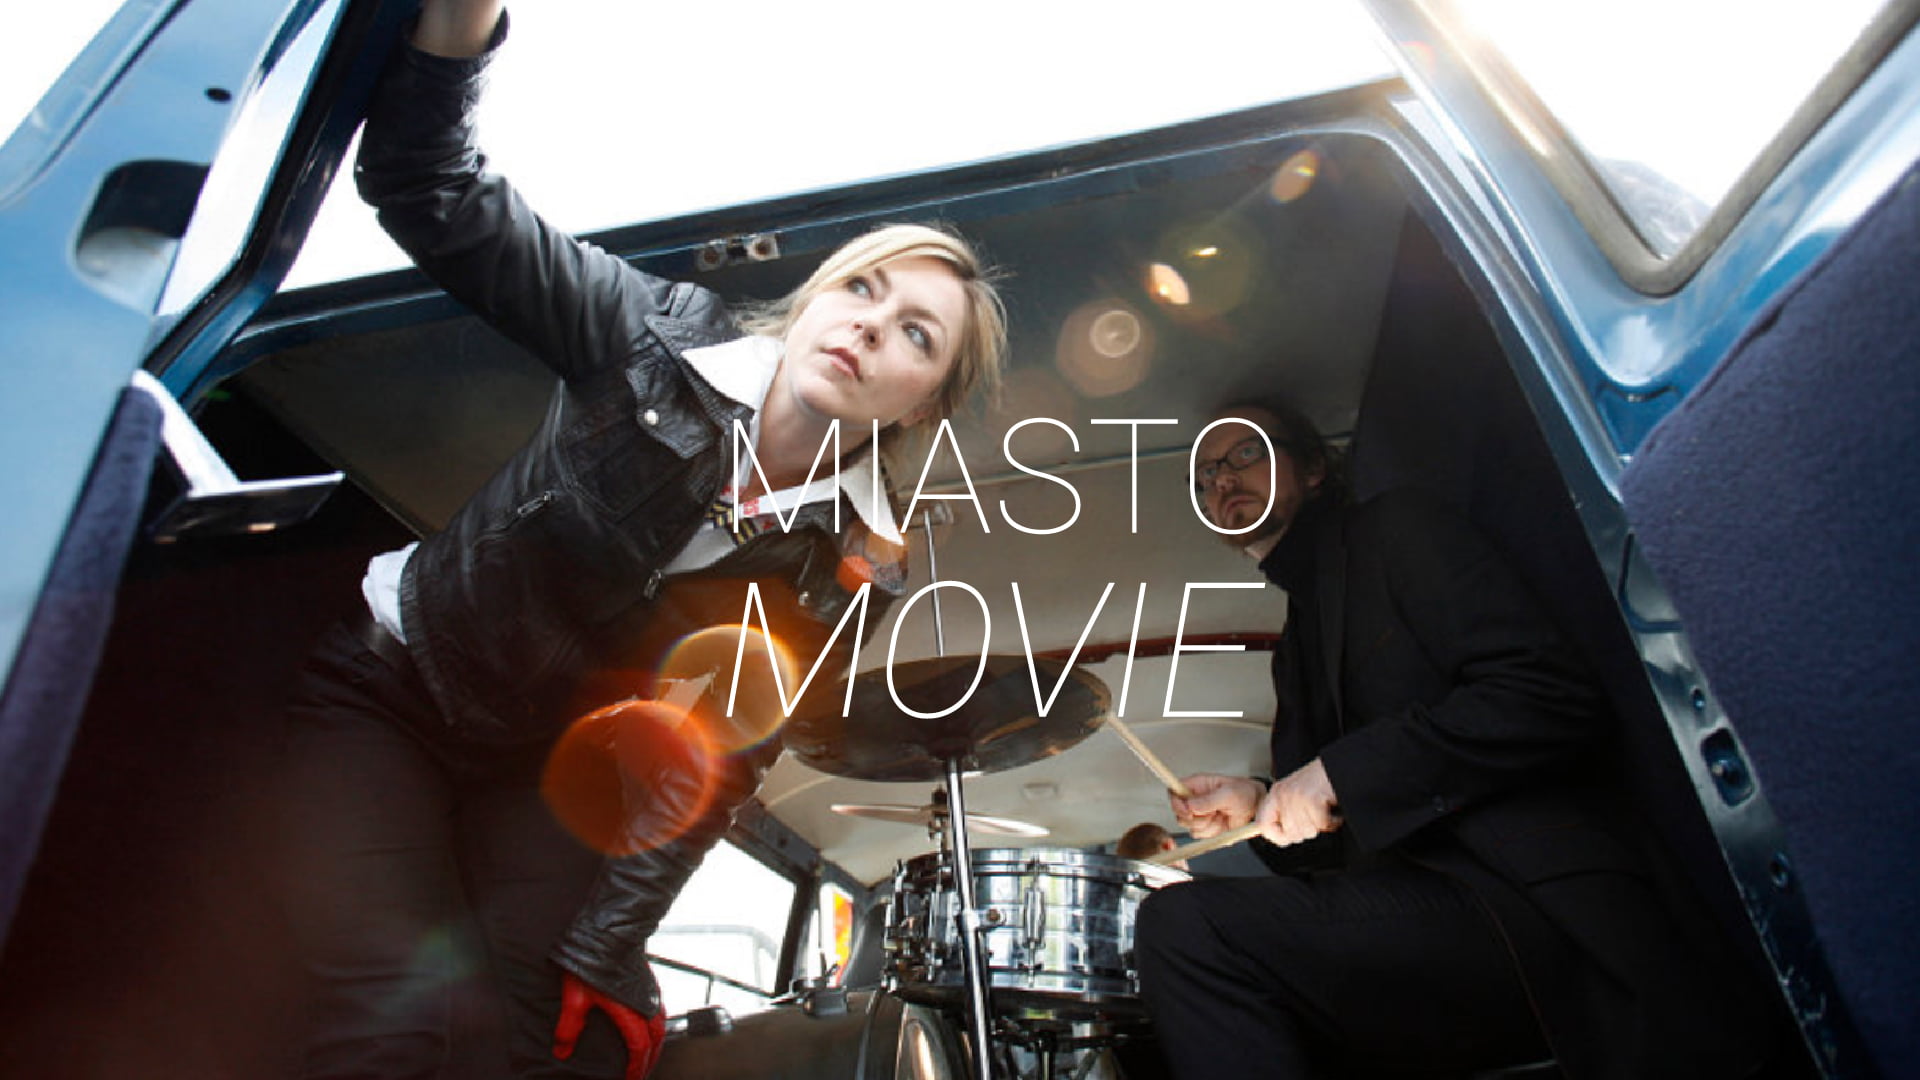 Zdjęcie kobiety i mężczyzny przy perkusji w bagażniku vana. Na środku napis Miasto Movie.